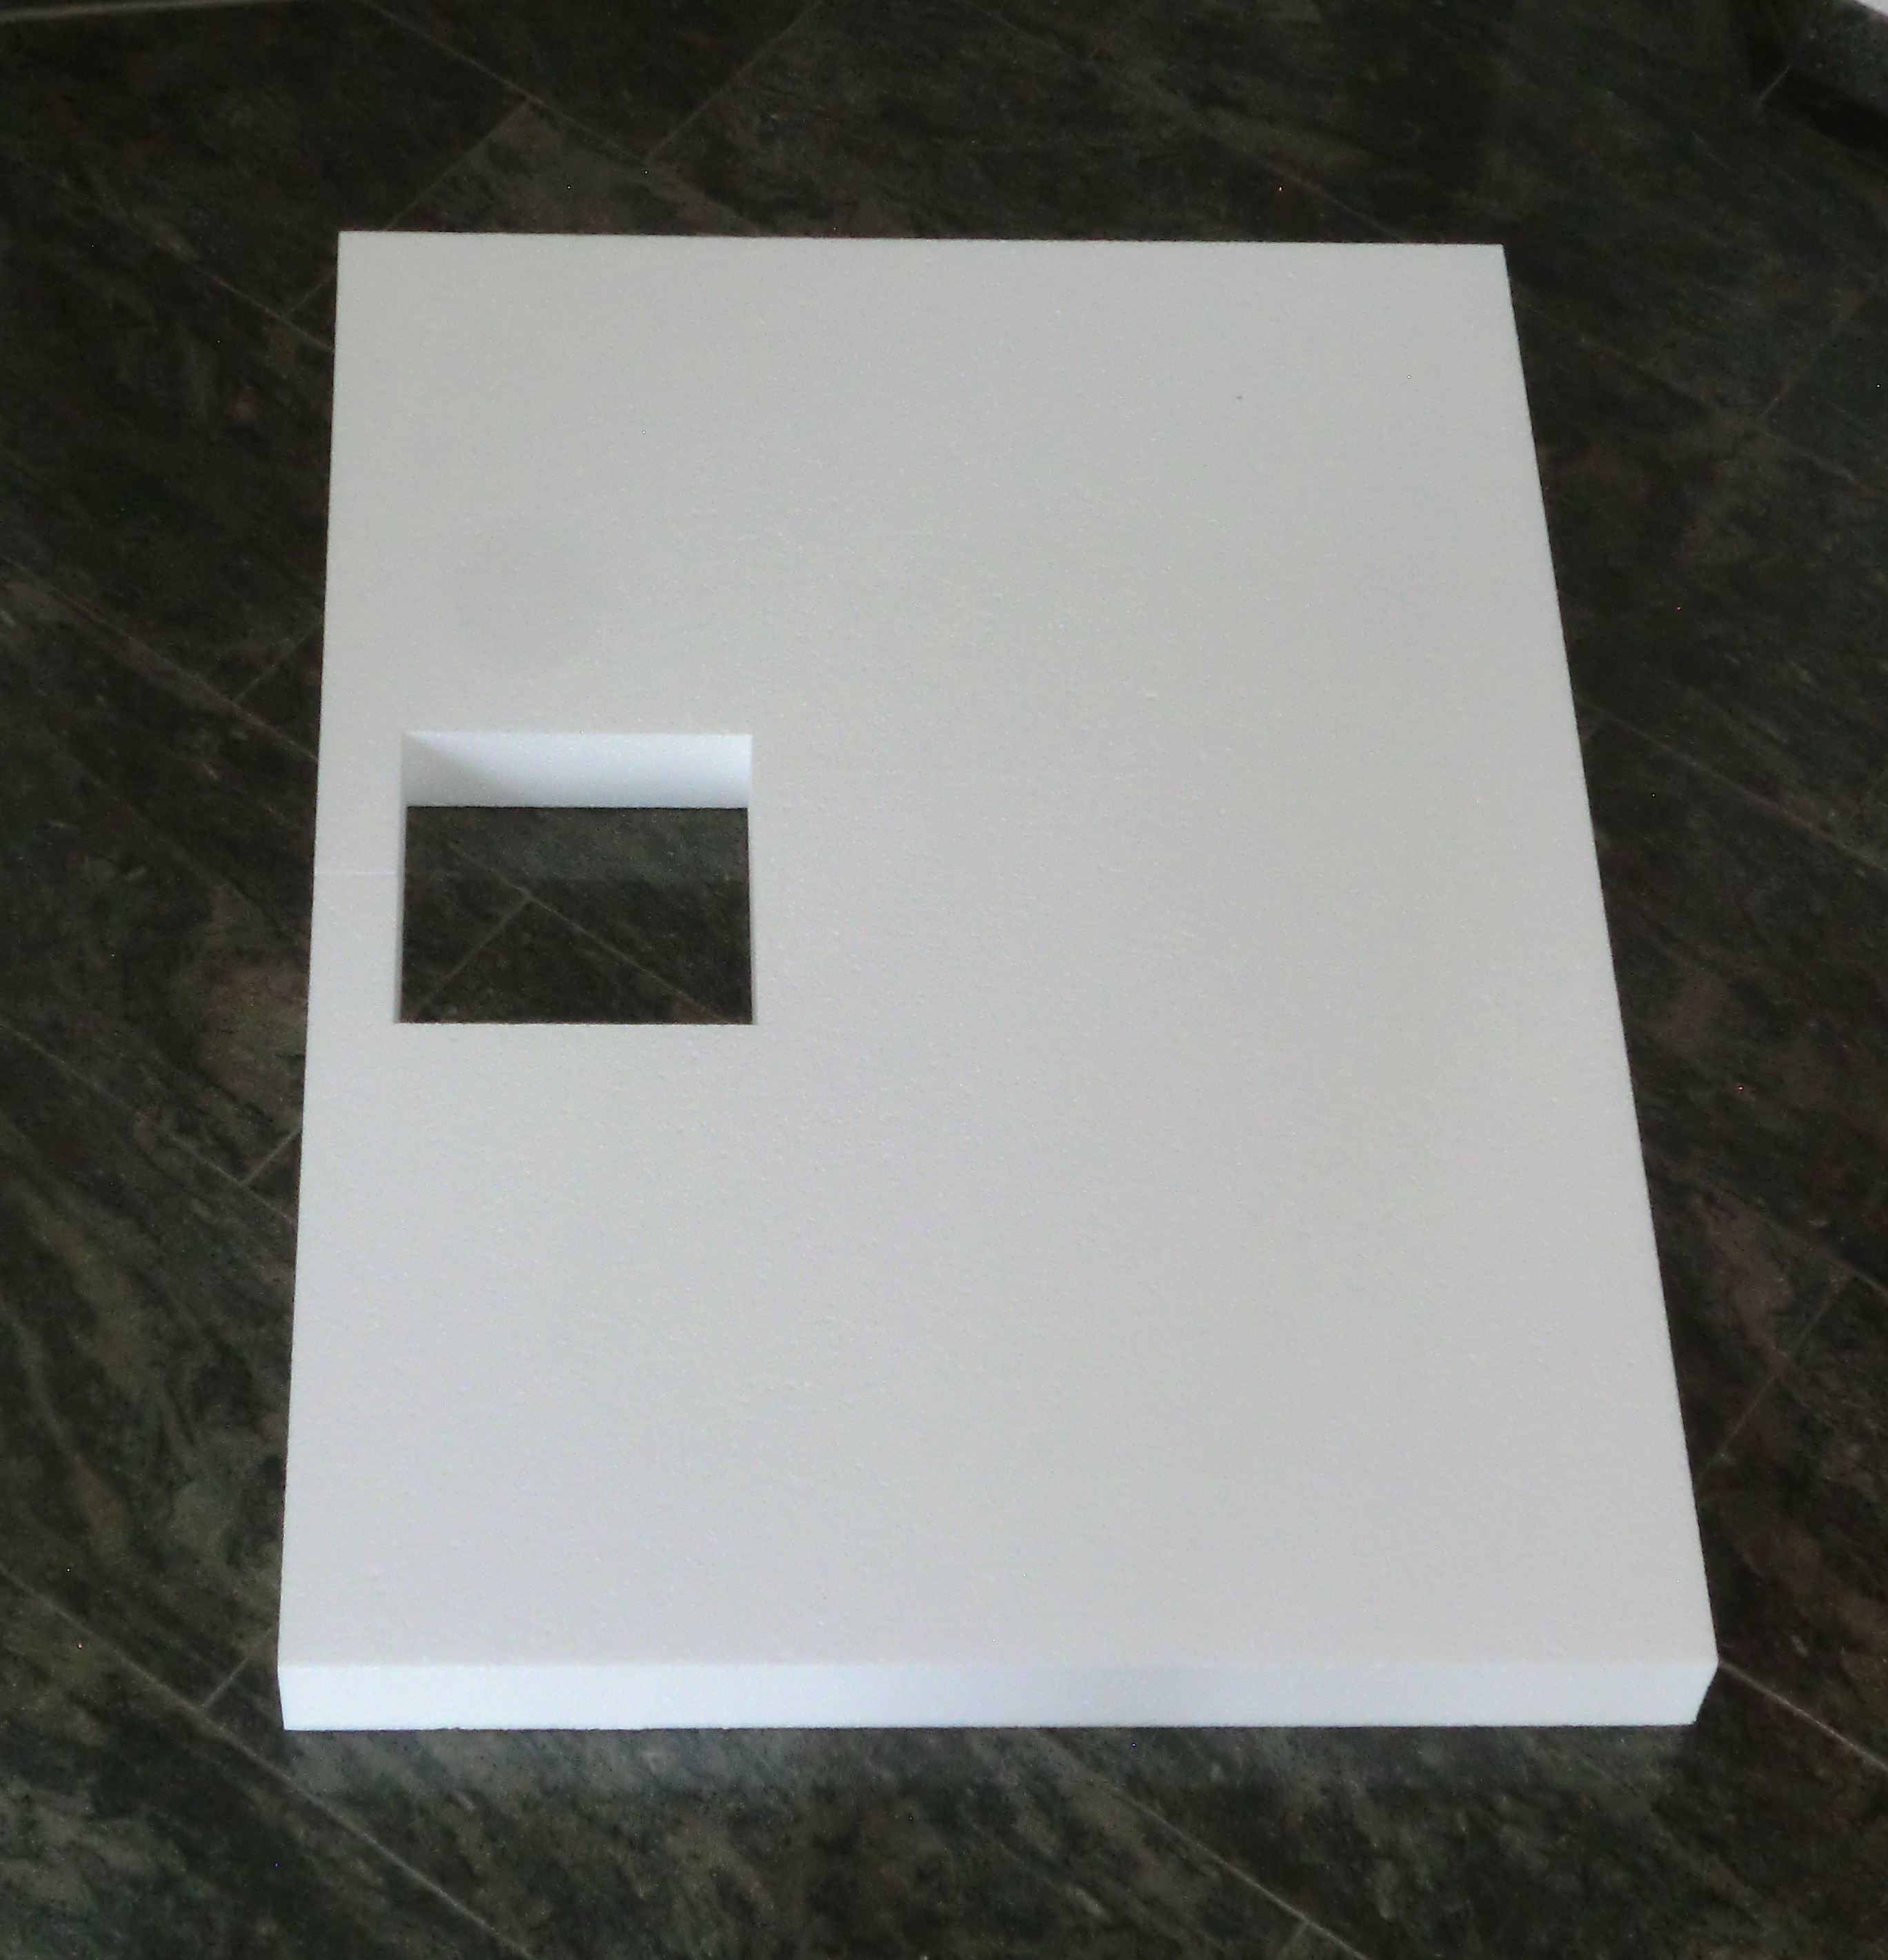 KOMPLETT-PAKET: Duschwanne 120 x 90 cm Farbe: PERGAMON superflach 3,5 cm weiß mit GERADER STYROPOR-UNTERSEITE Acryl + Styroporträger/Wannenträger + Ablaufgarnitur chrom DN 90 